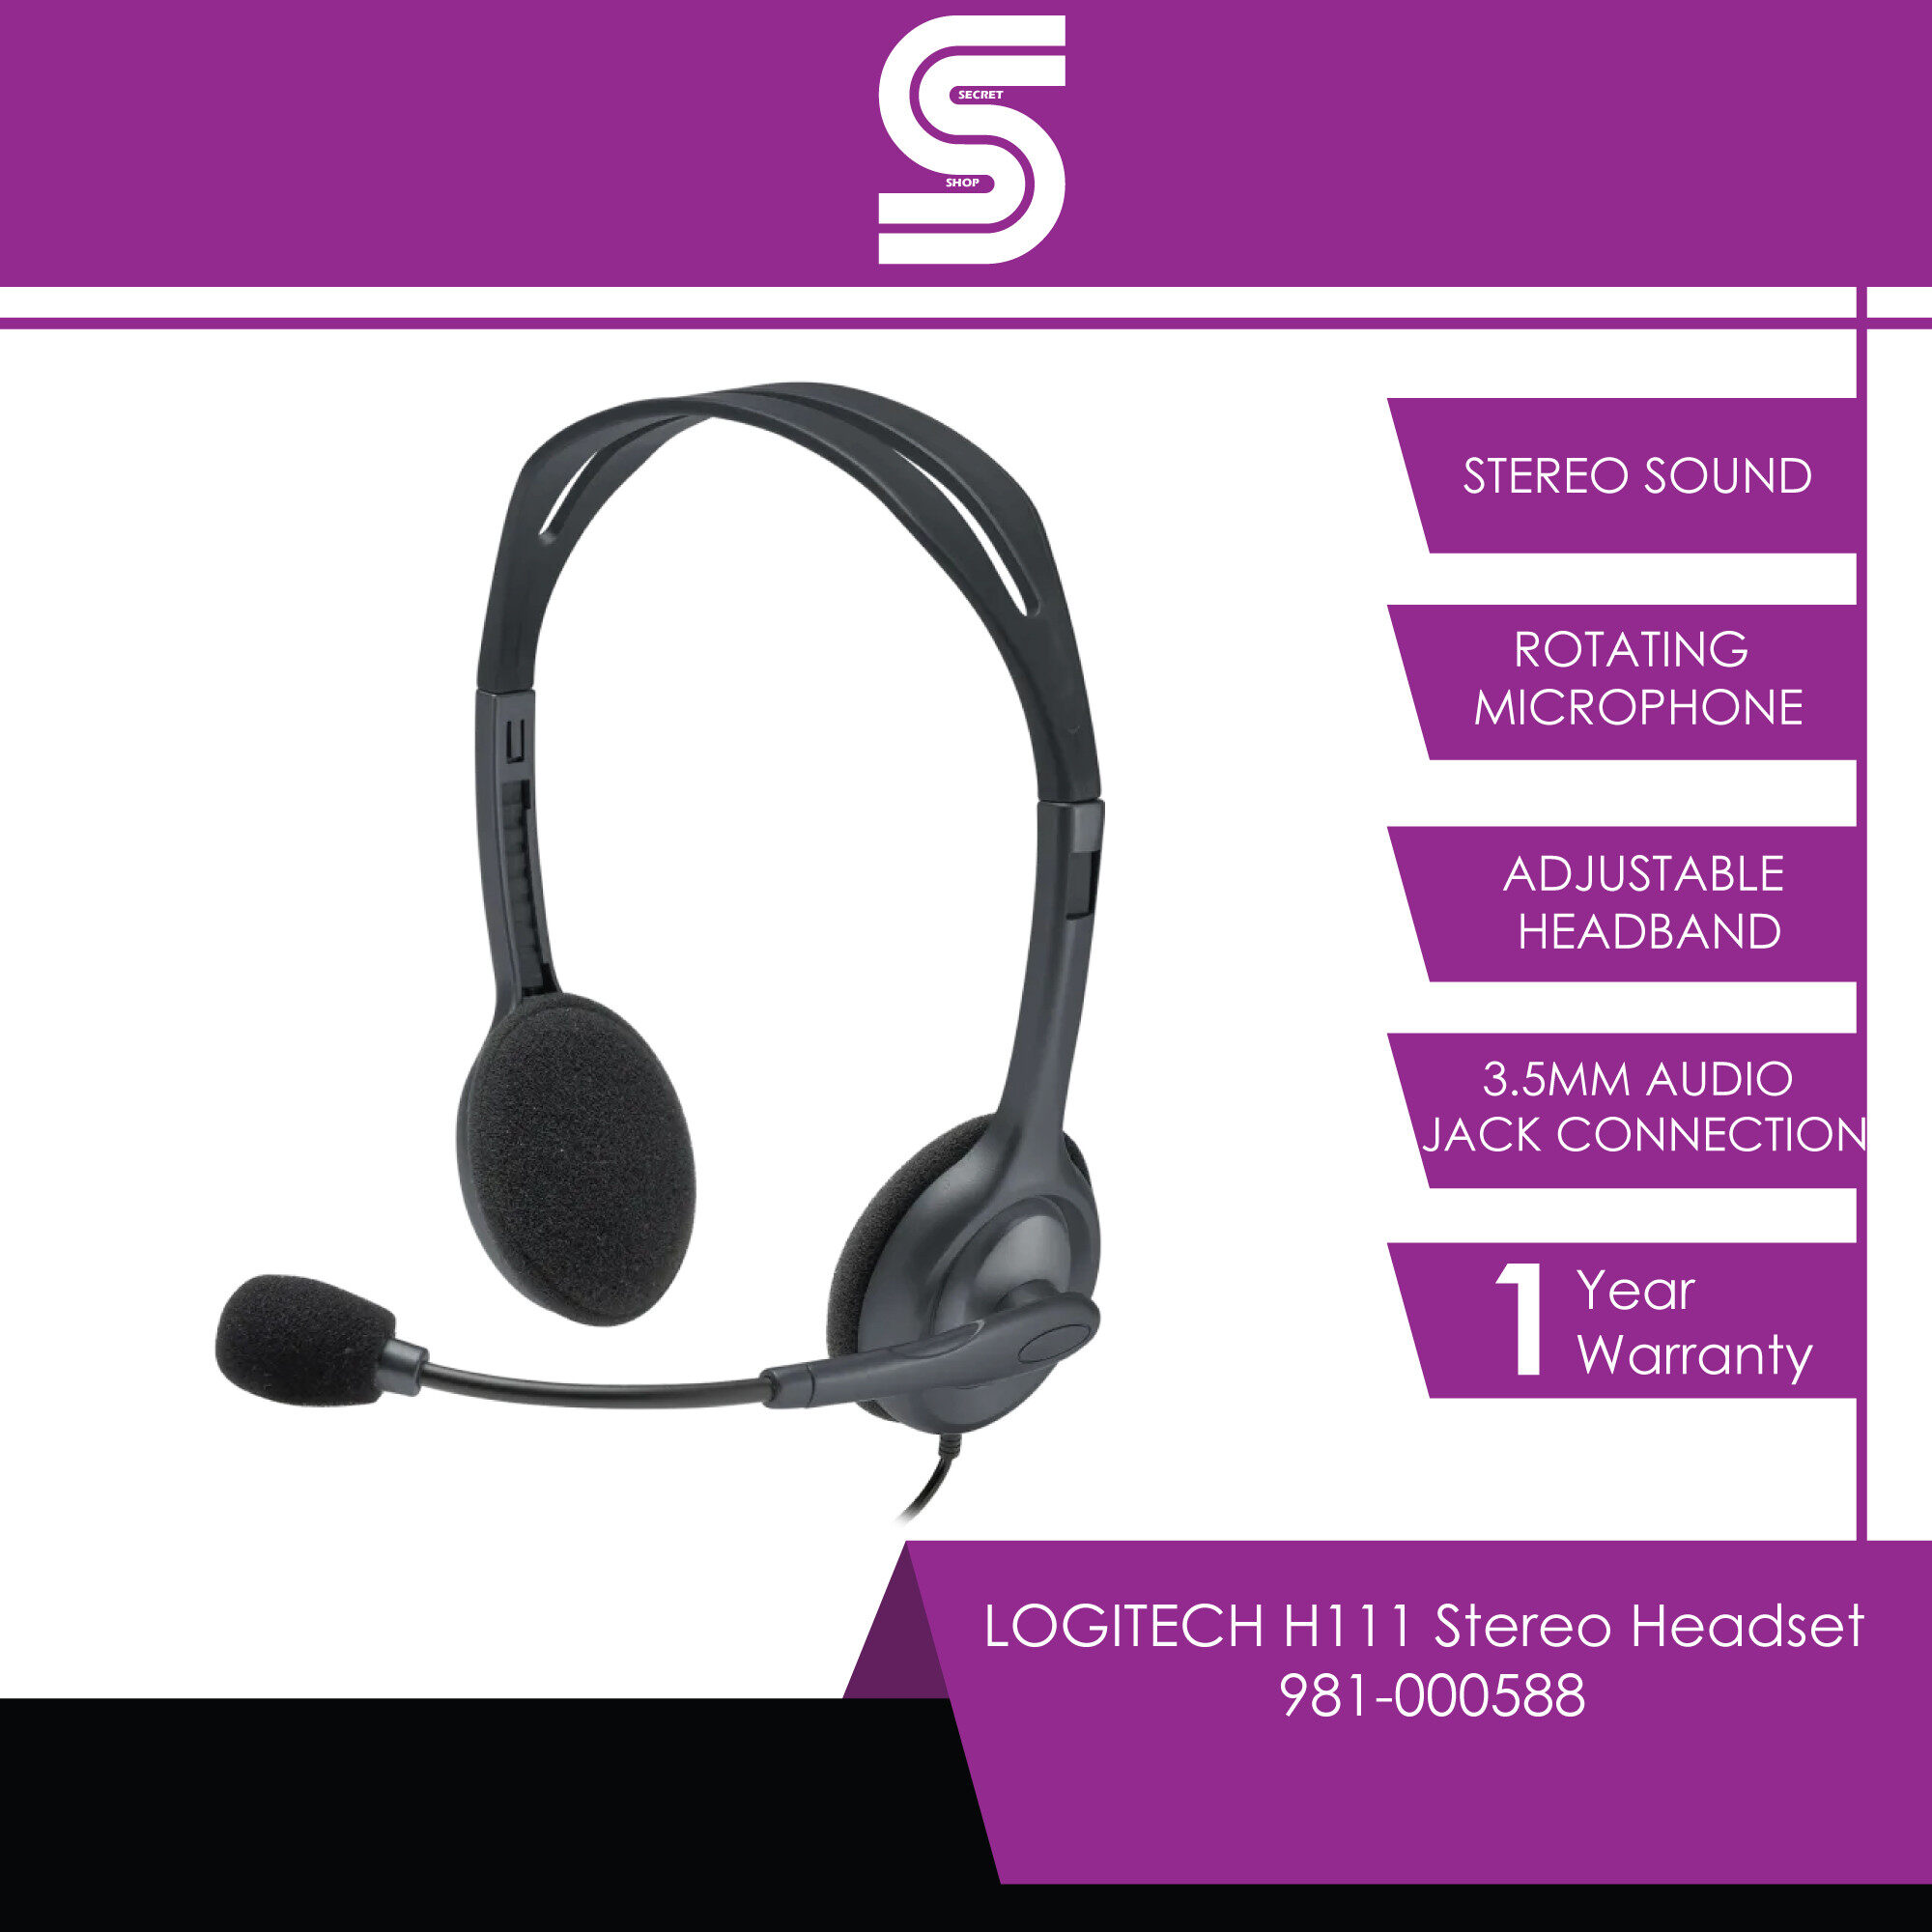 LOGITECH H111 Stereo Headset - 981-000588